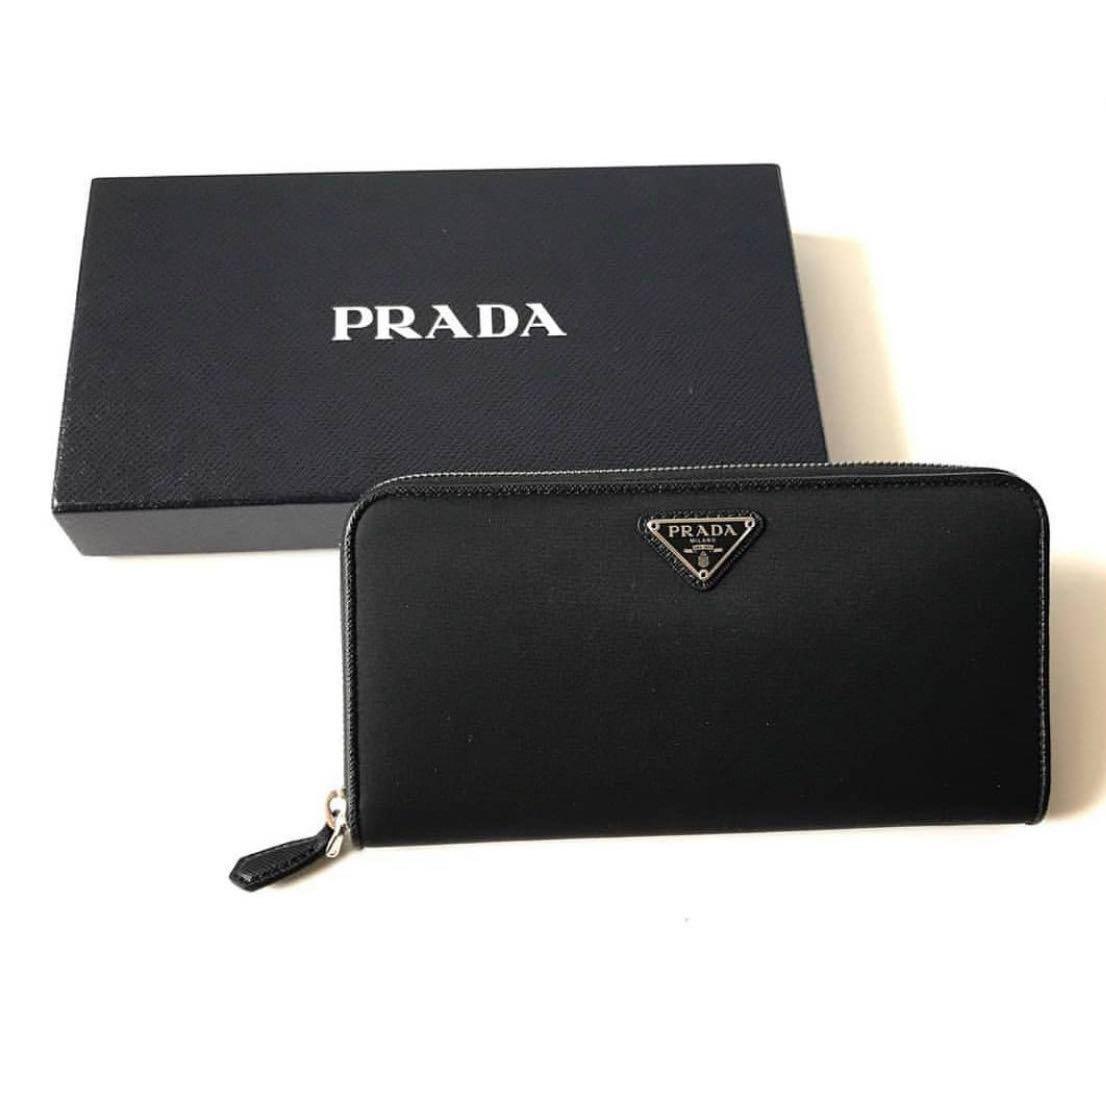 prada wallet for sale, OFF 78%,www 